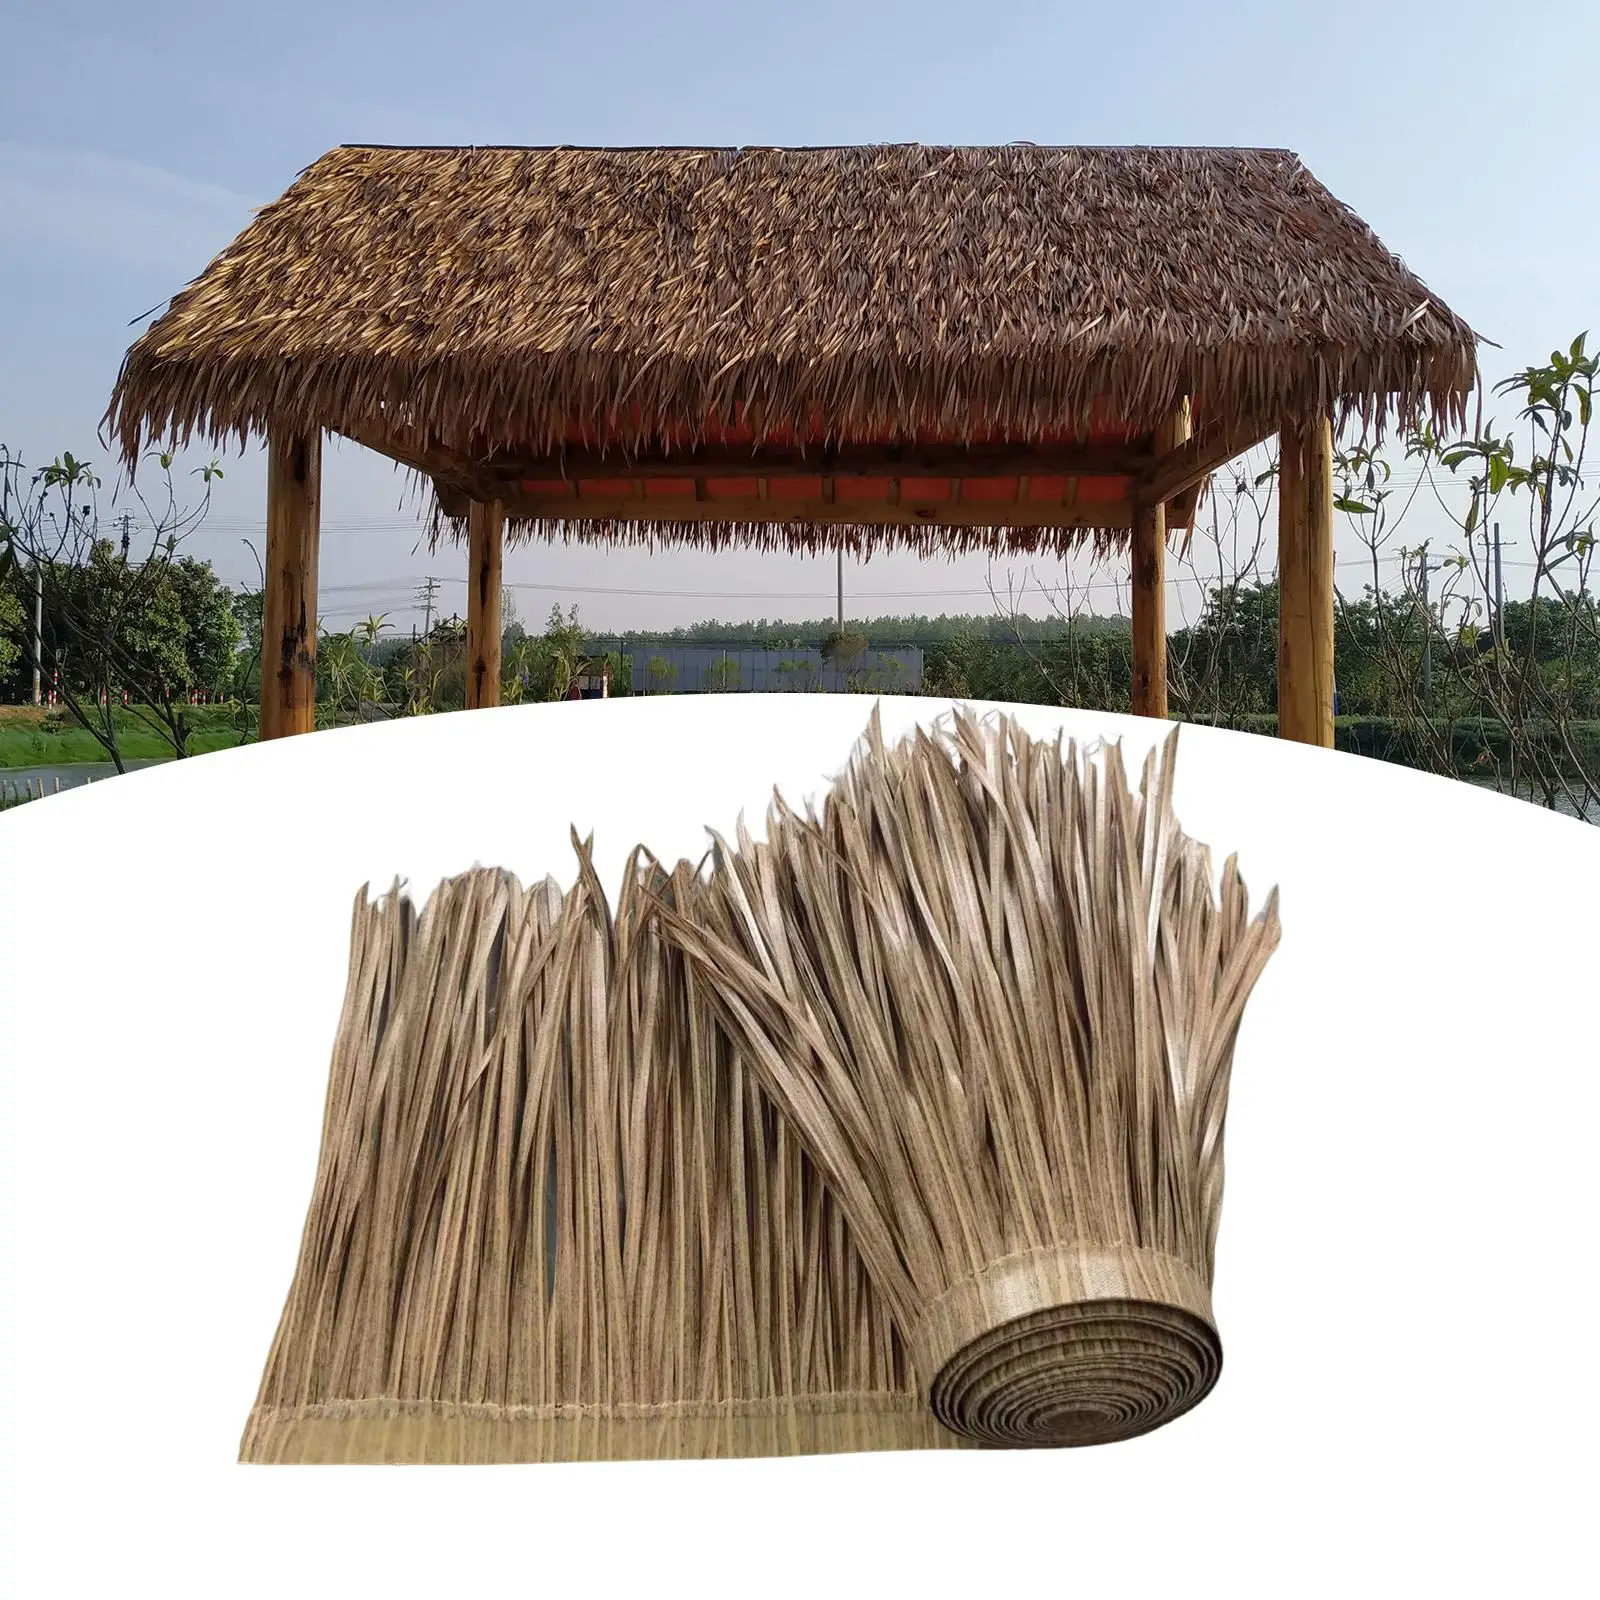 Palm Thatch Roll Grass Thatch Roll Straw Mats Trimming Diy Shutters, Artificial